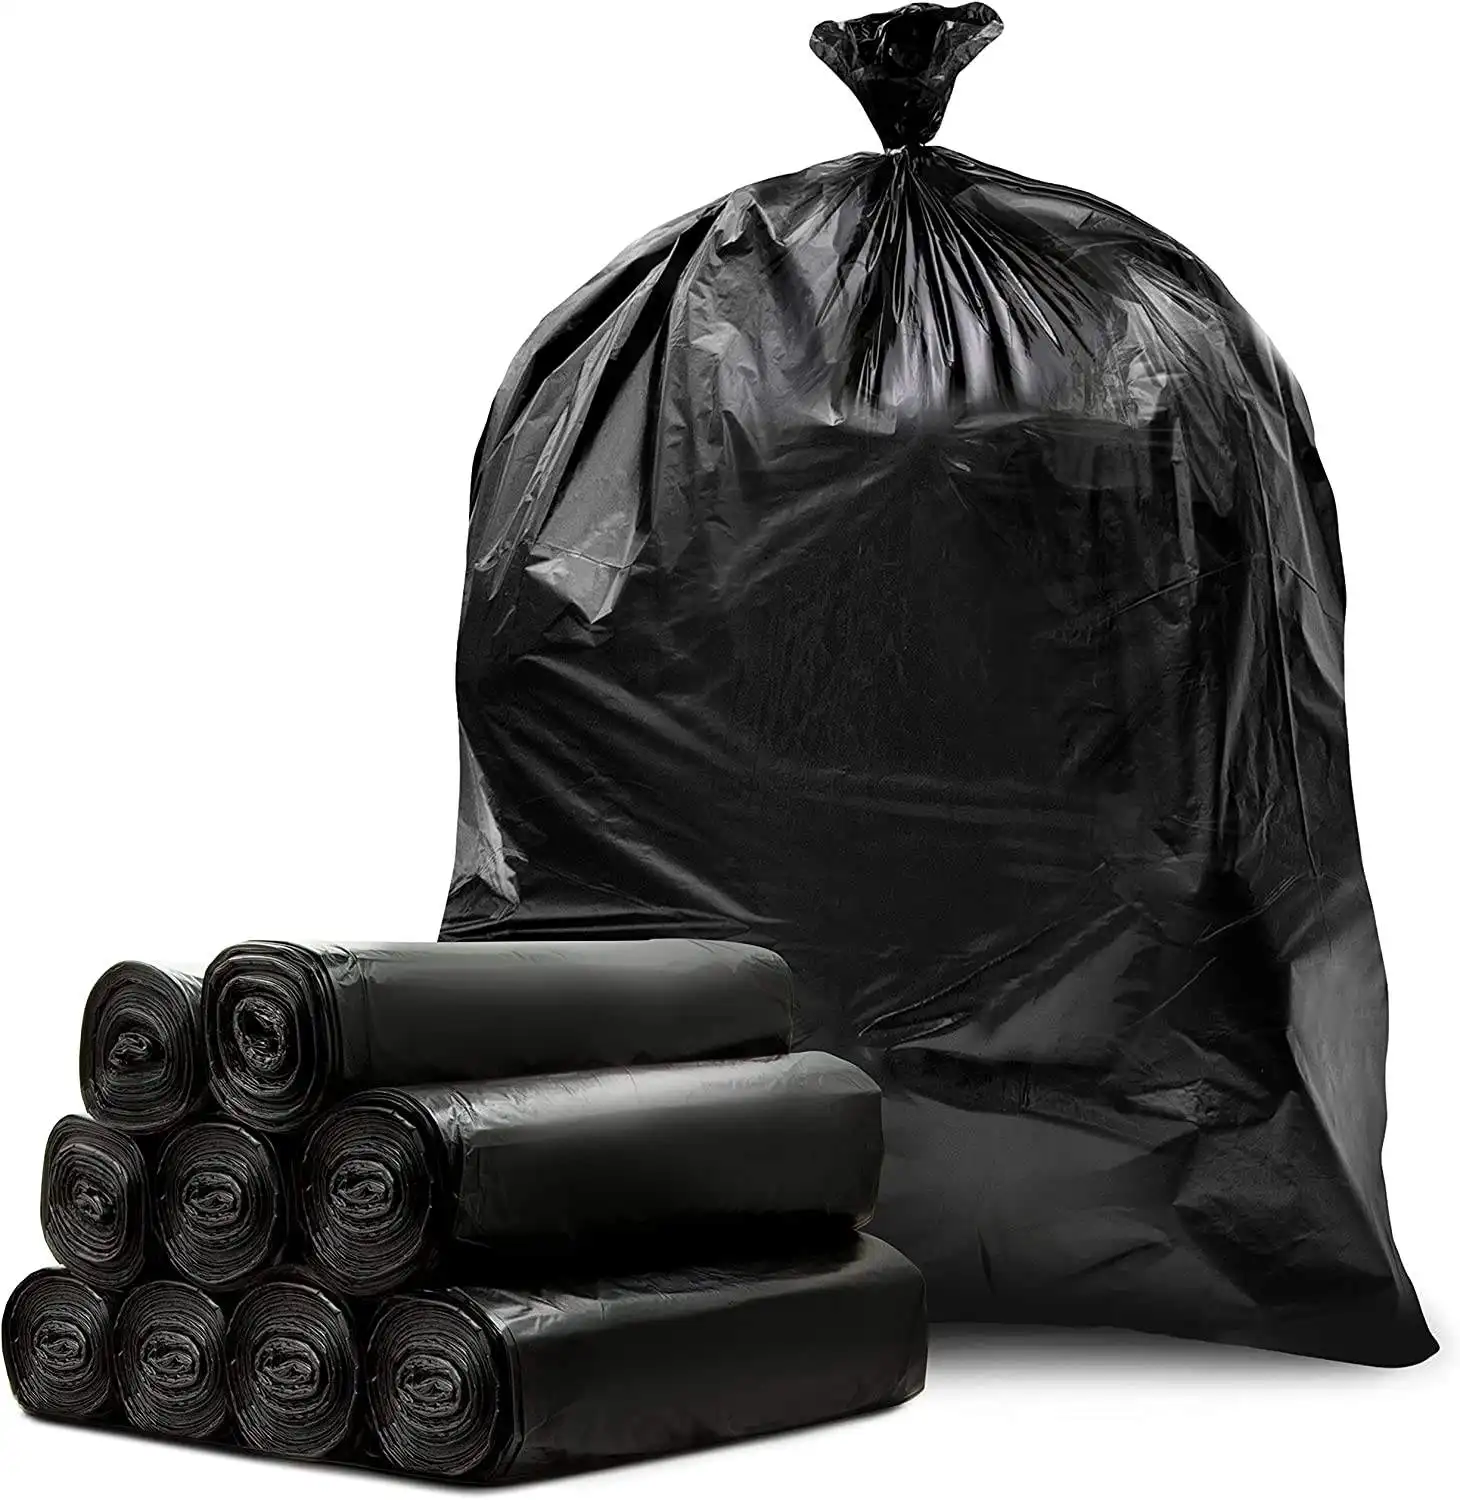 ถุงขยะสีดำย่อยสลายได้ทางชีวภาพ,ถุงขยะย่อยสลายได้เป็นมิตรกับสิ่งแวดล้อม